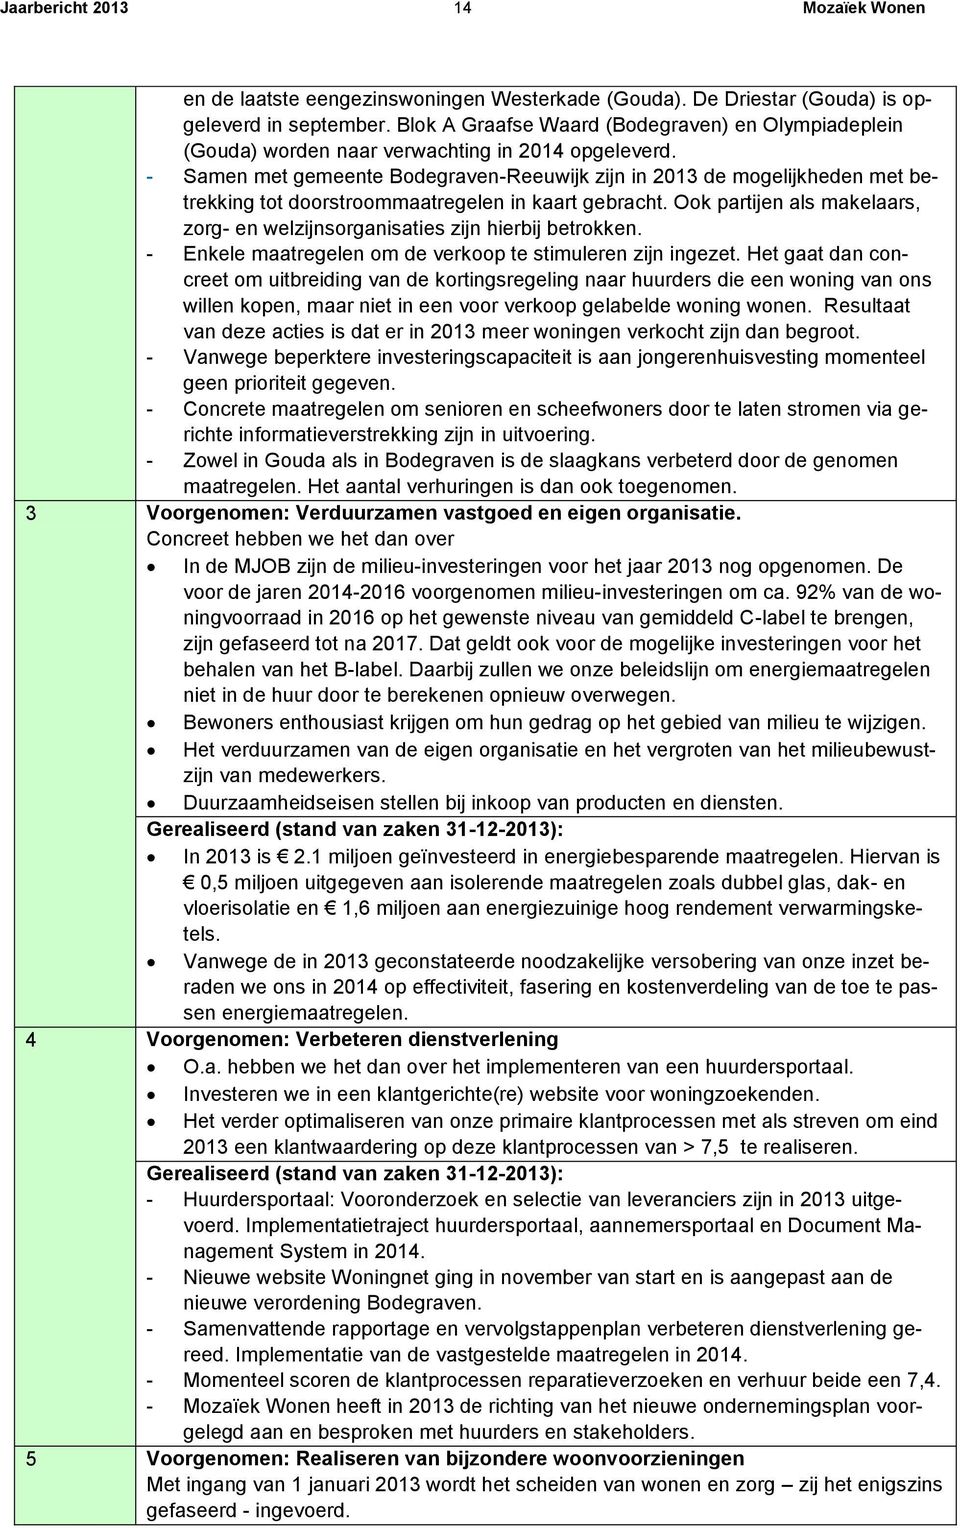 - Samen met gemeente Bodegraven-Reeuwijk zijn in 2013 de mogelijkheden met betrekking tot doorstroommaatregelen in kaart gebracht.